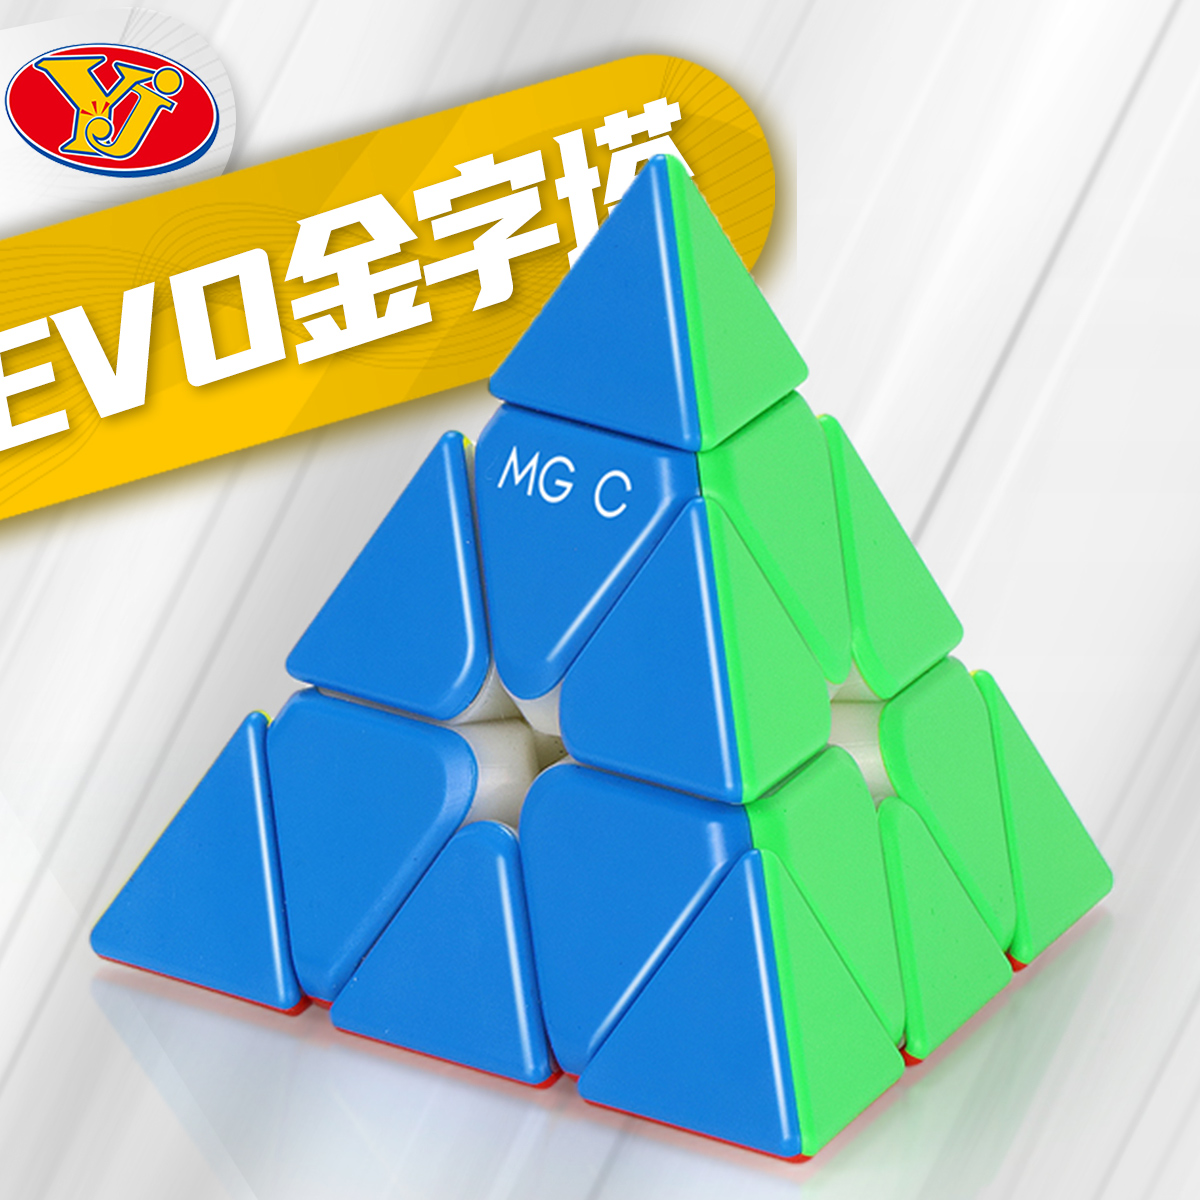 永骏MGC EVO金字塔磁力魔方 可调磁定位3阶异形顺滑儿童益智玩具